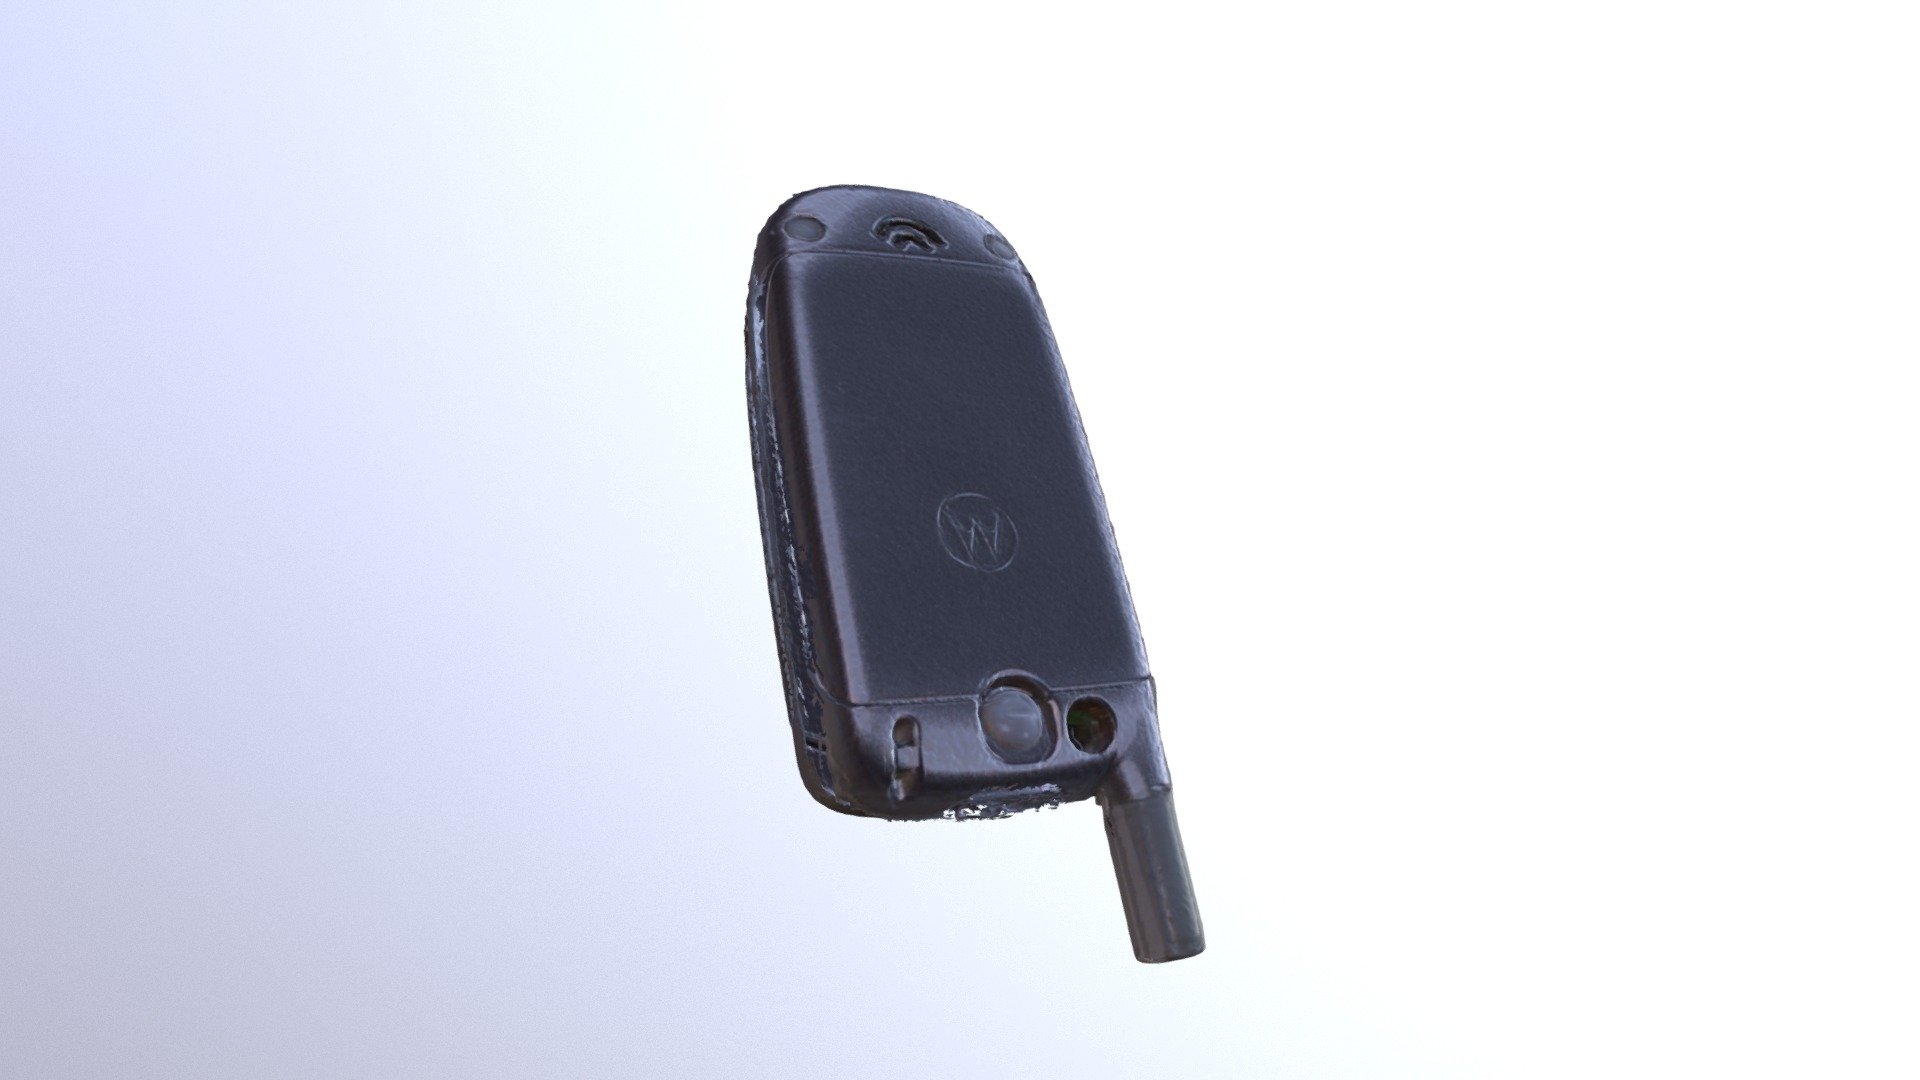 Flip Phone